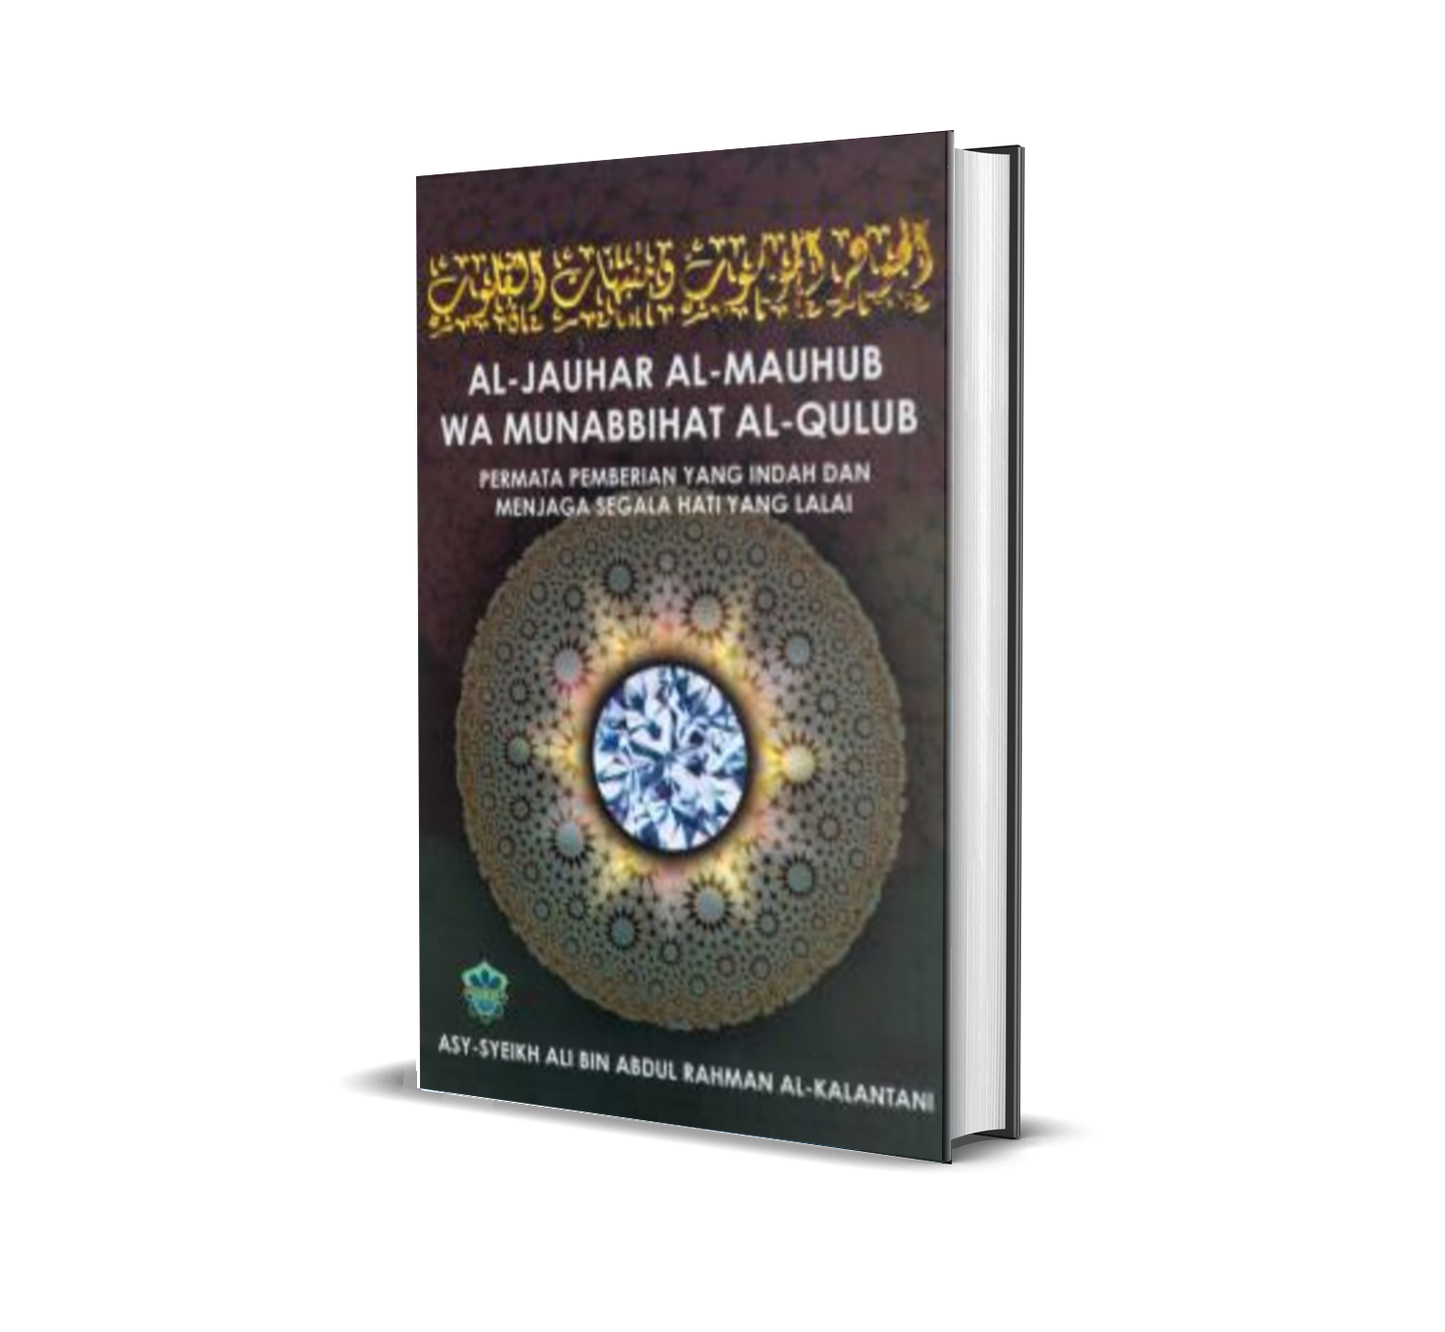 Al-Jauhar Al-Mauhub Wa Munabbihat Al-Qulub  Permata Pemberian Yang Indah Dan Menjaga Segala Hati Yang Lalai